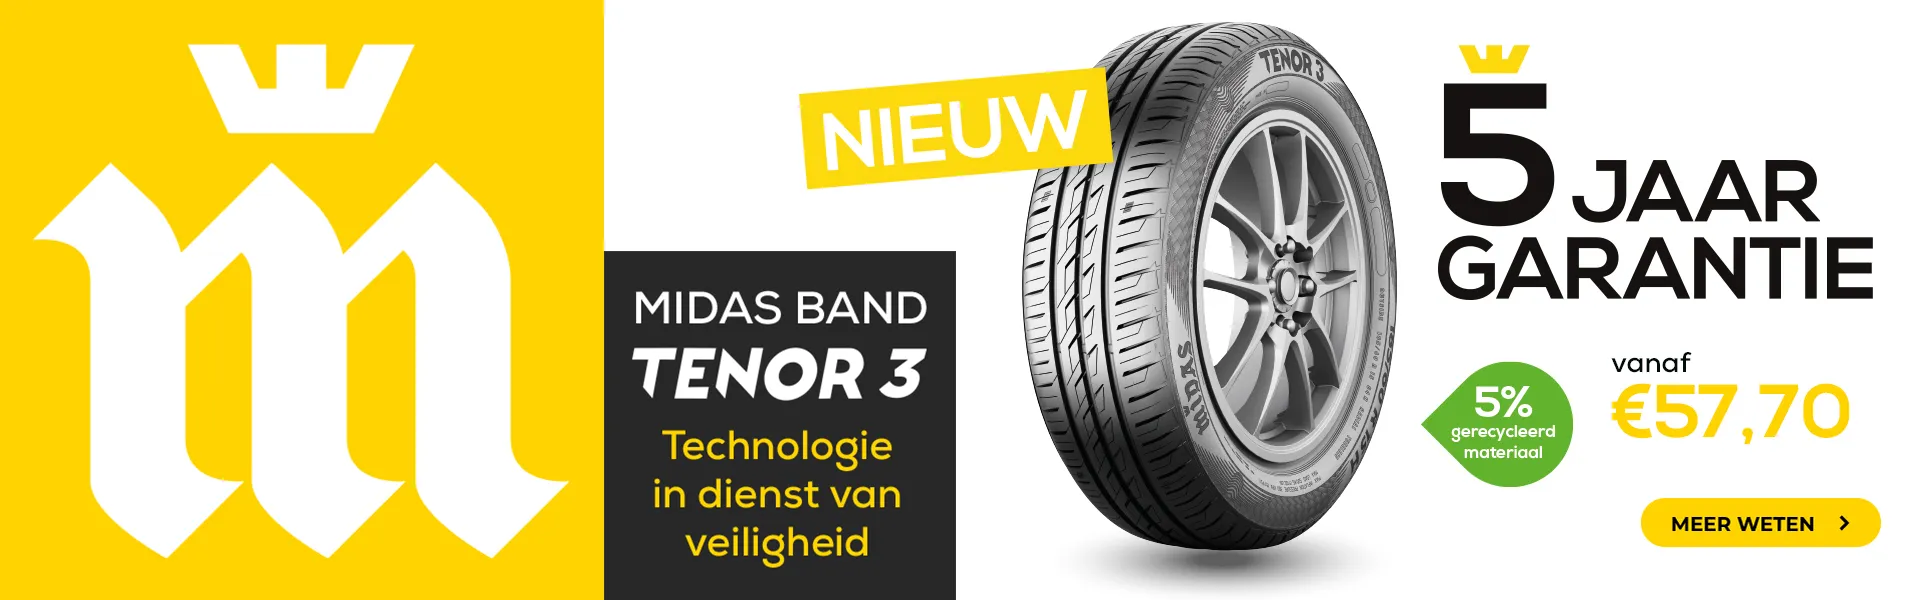 op1-22-tenor3-banner-homepage-desktop-nl-57